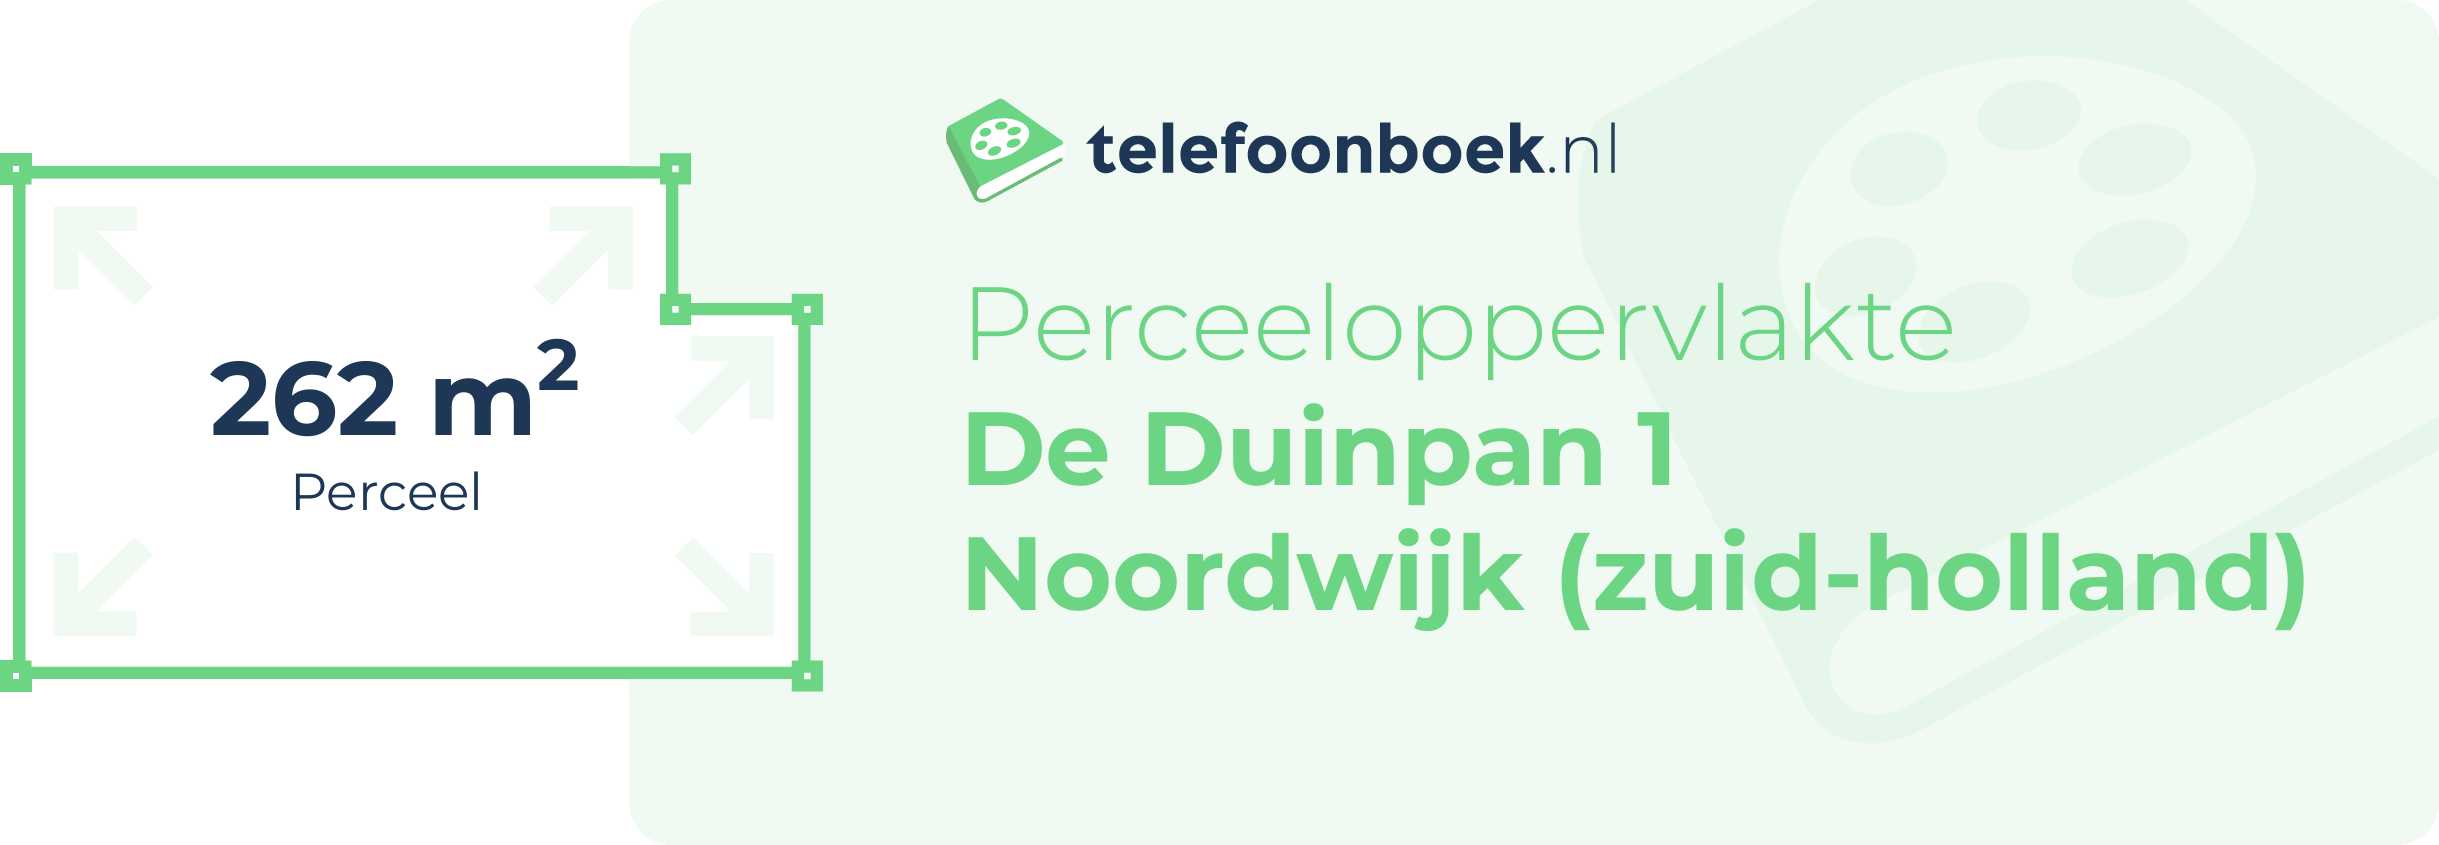 Perceeloppervlakte De Duinpan 1 Noordwijk (Zuid-Holland)